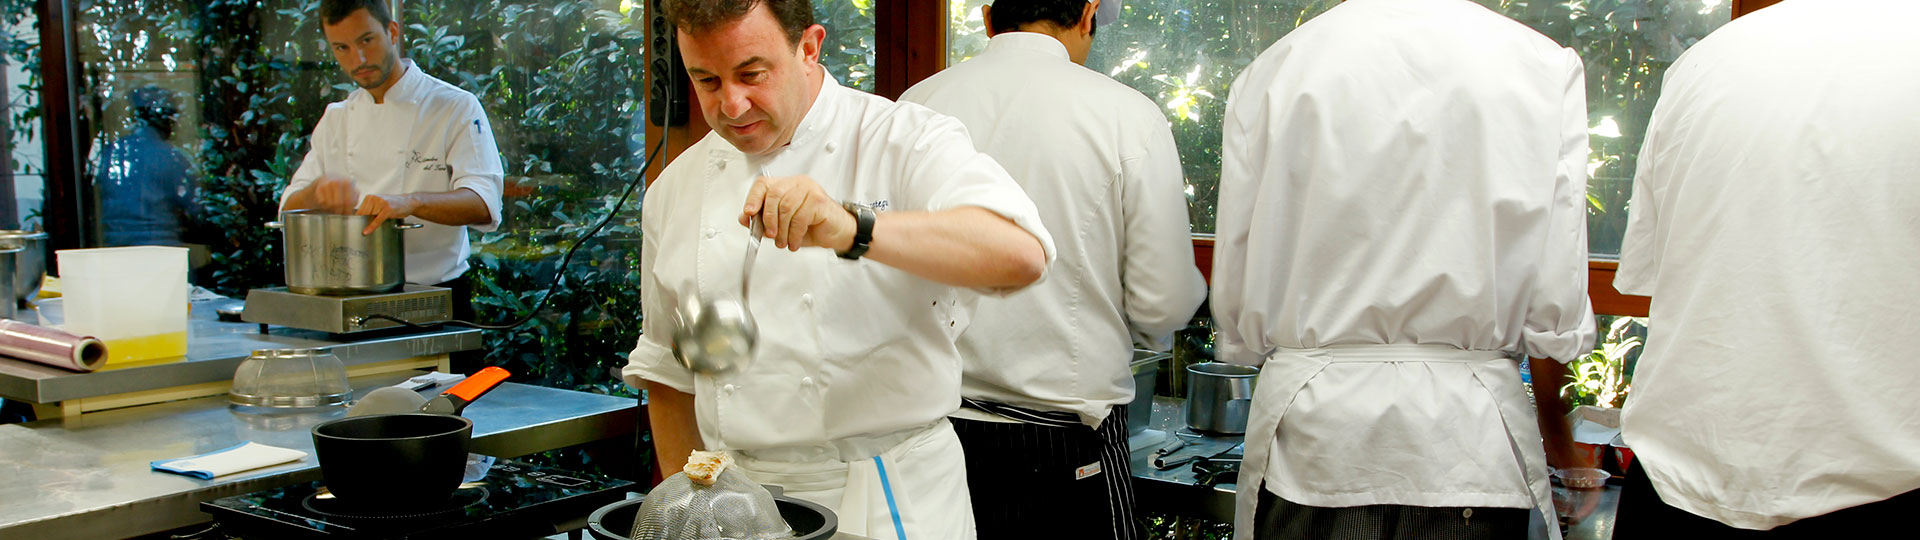 El chef español Martín Berasategui cocinando